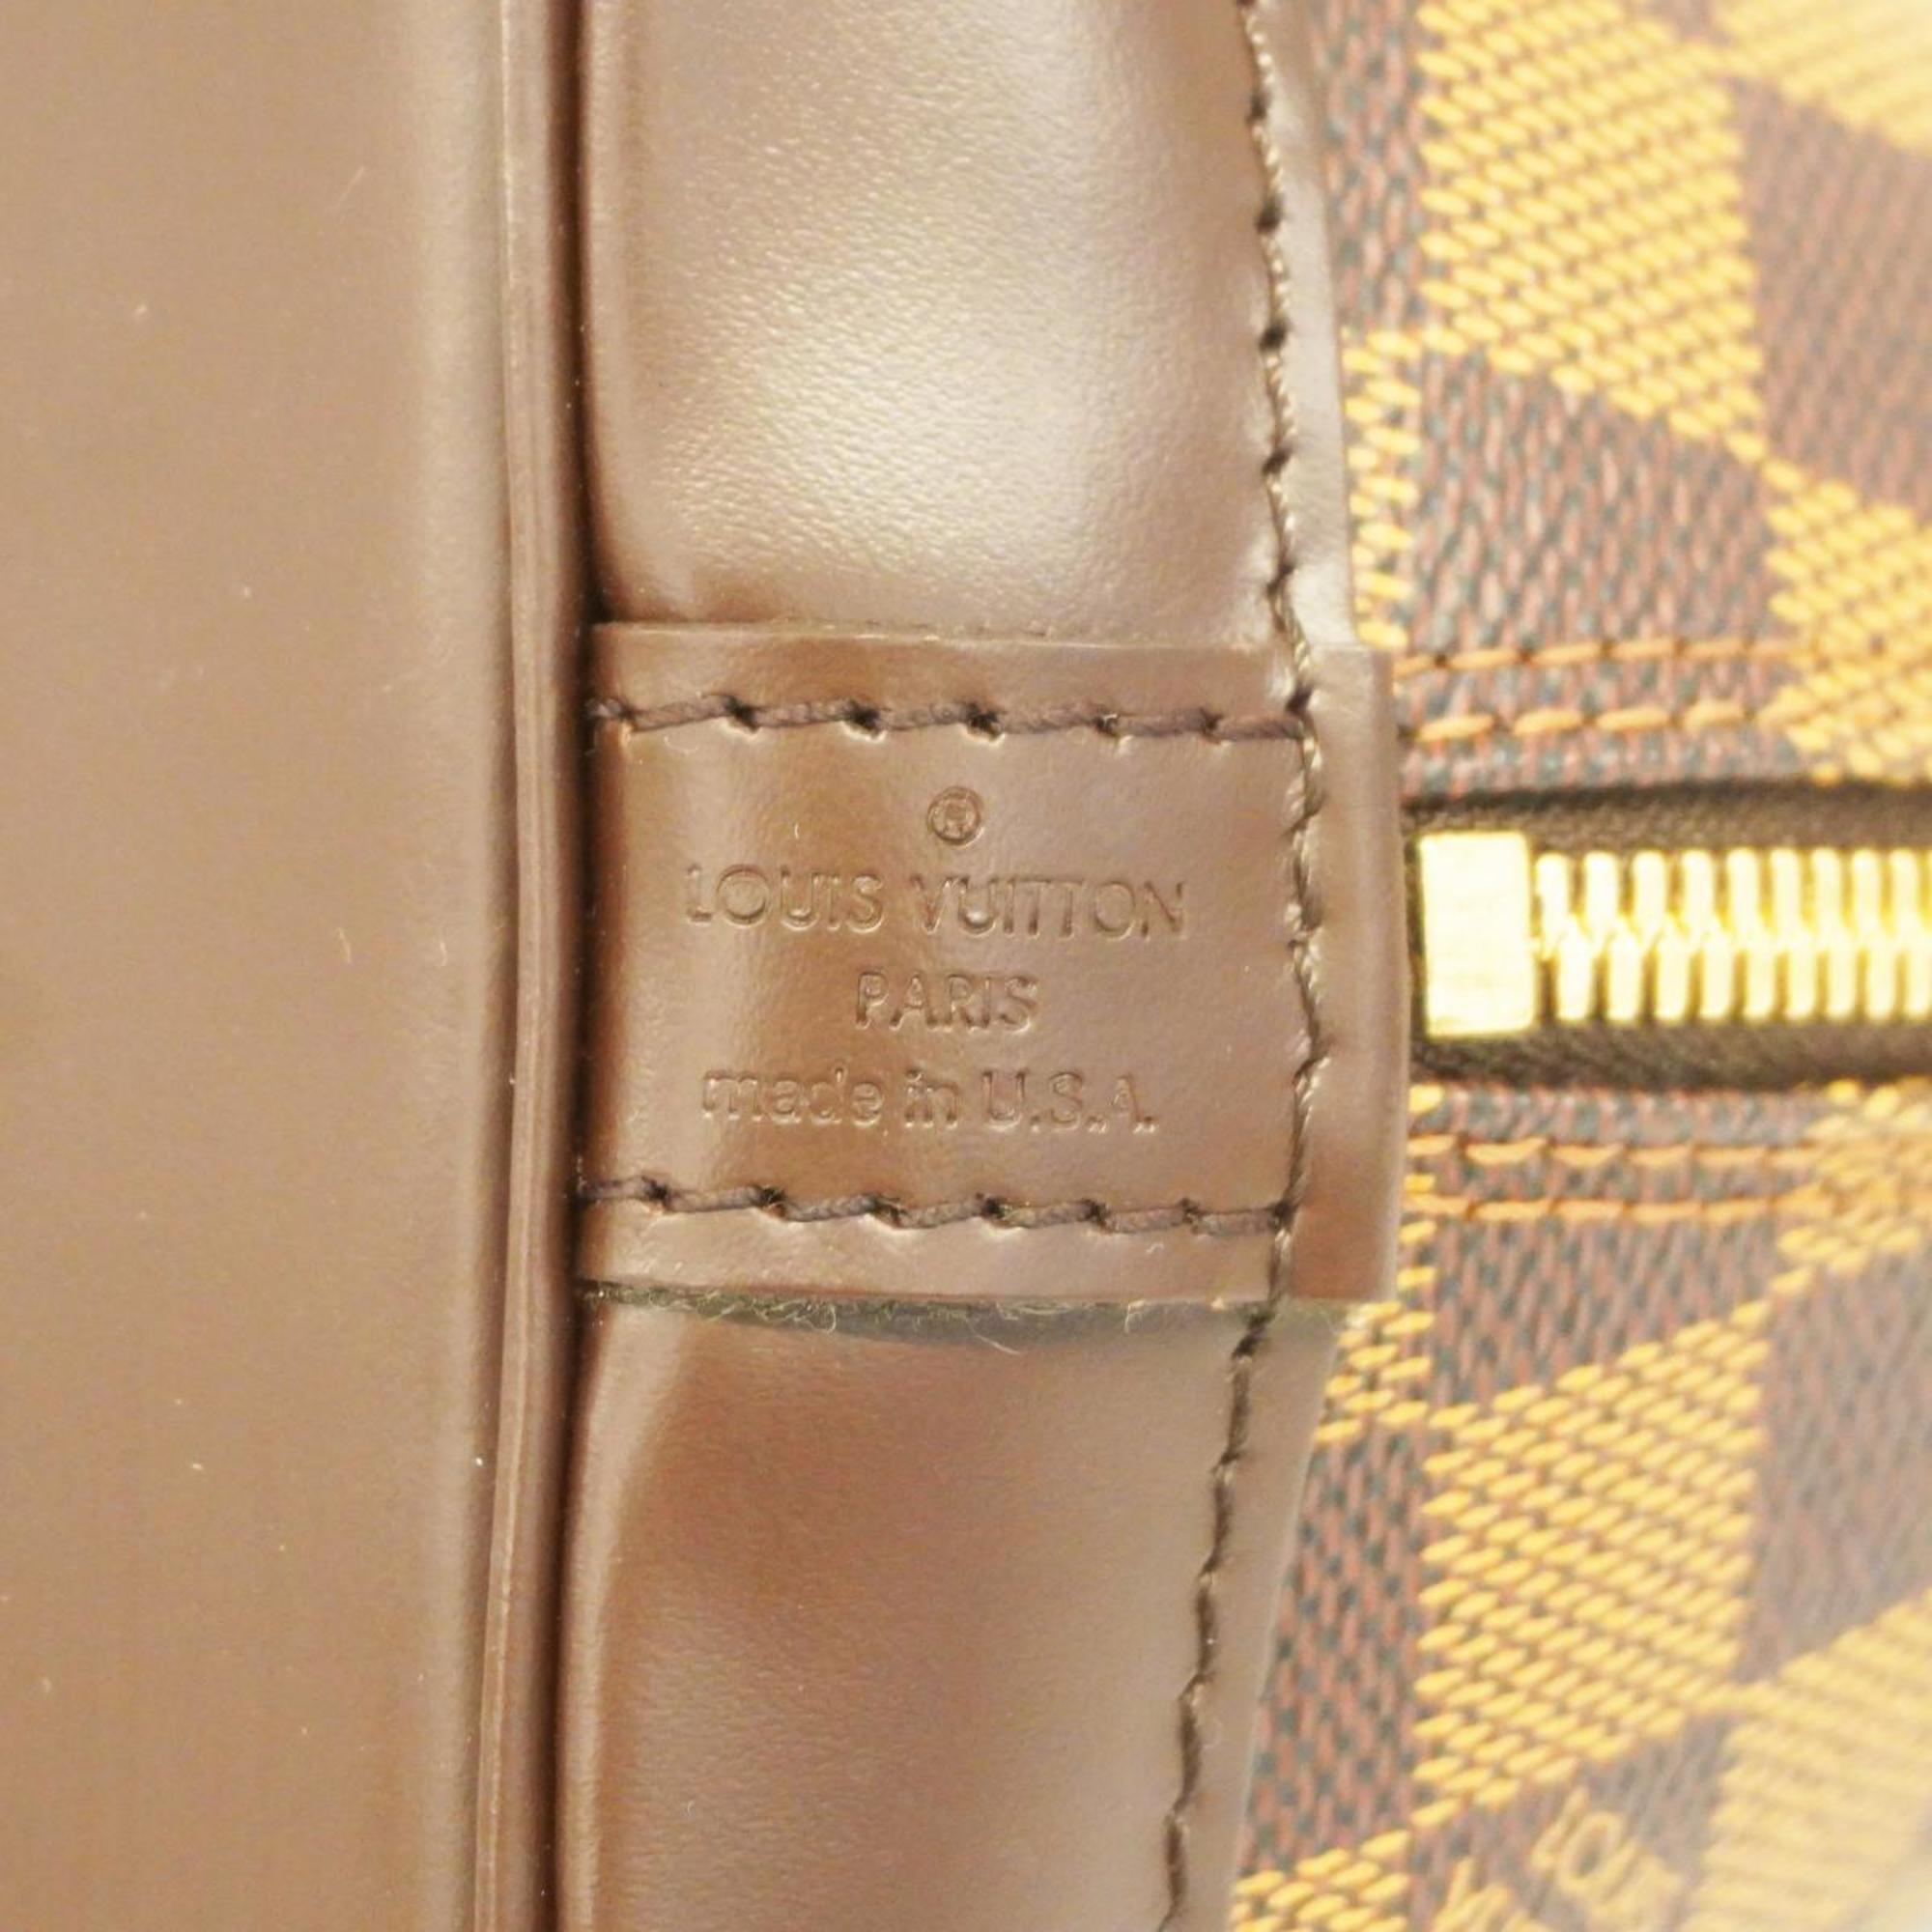 ルイ・ヴィトン(Louis Vuitton) ルイ・ヴィトン ハンドバッグ ダミエ アルマ N53151 エベヌレディース